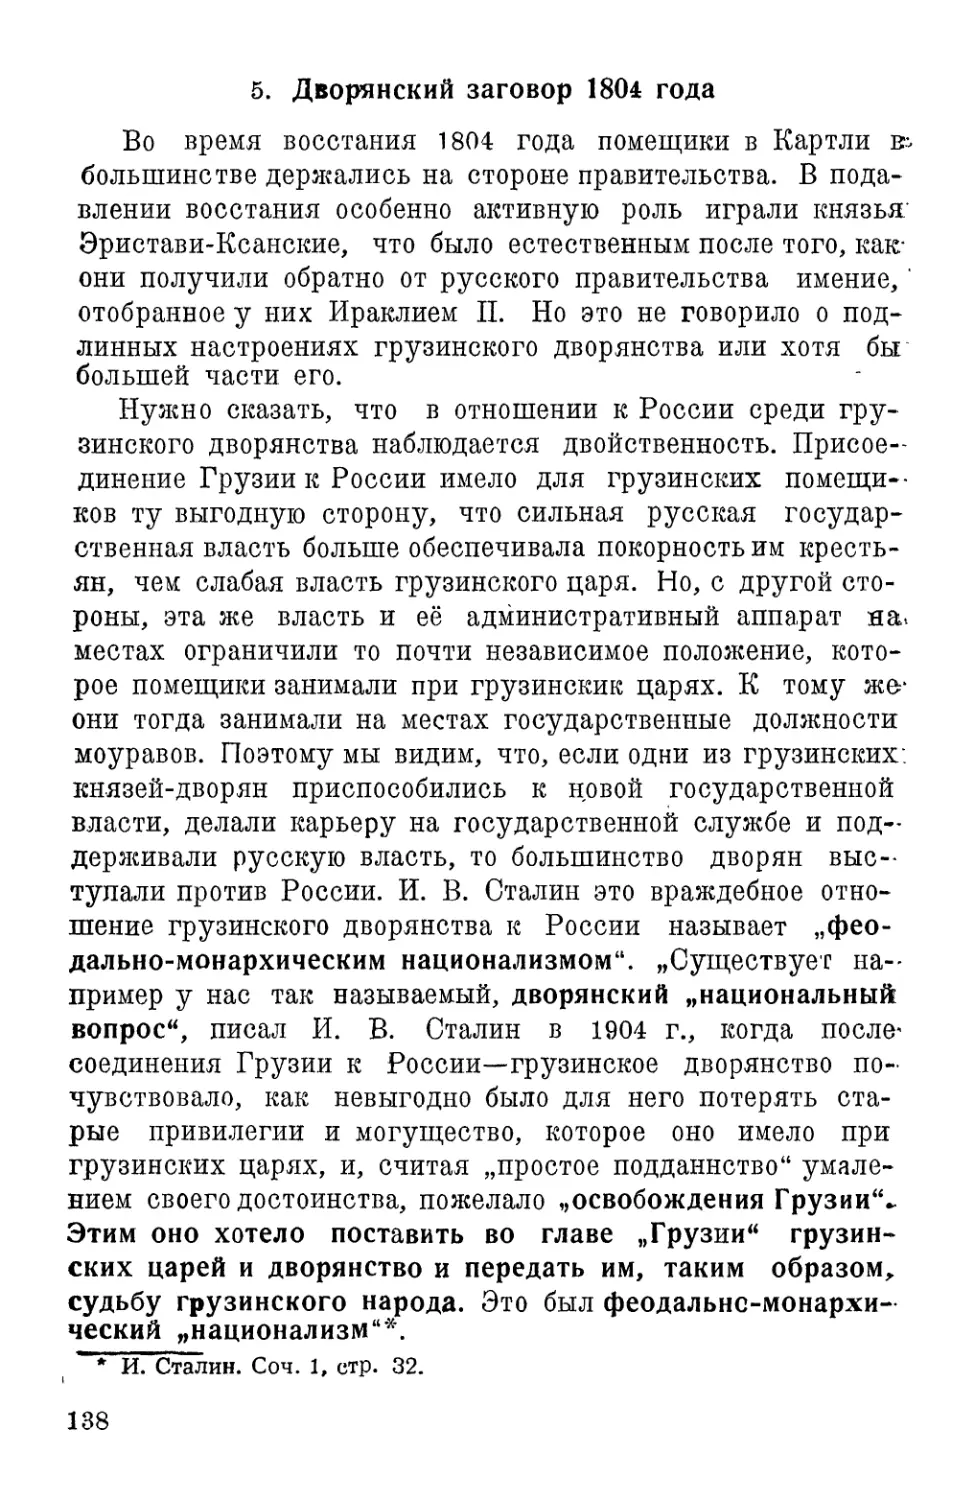 4. Дворянский заговор 1804 г.